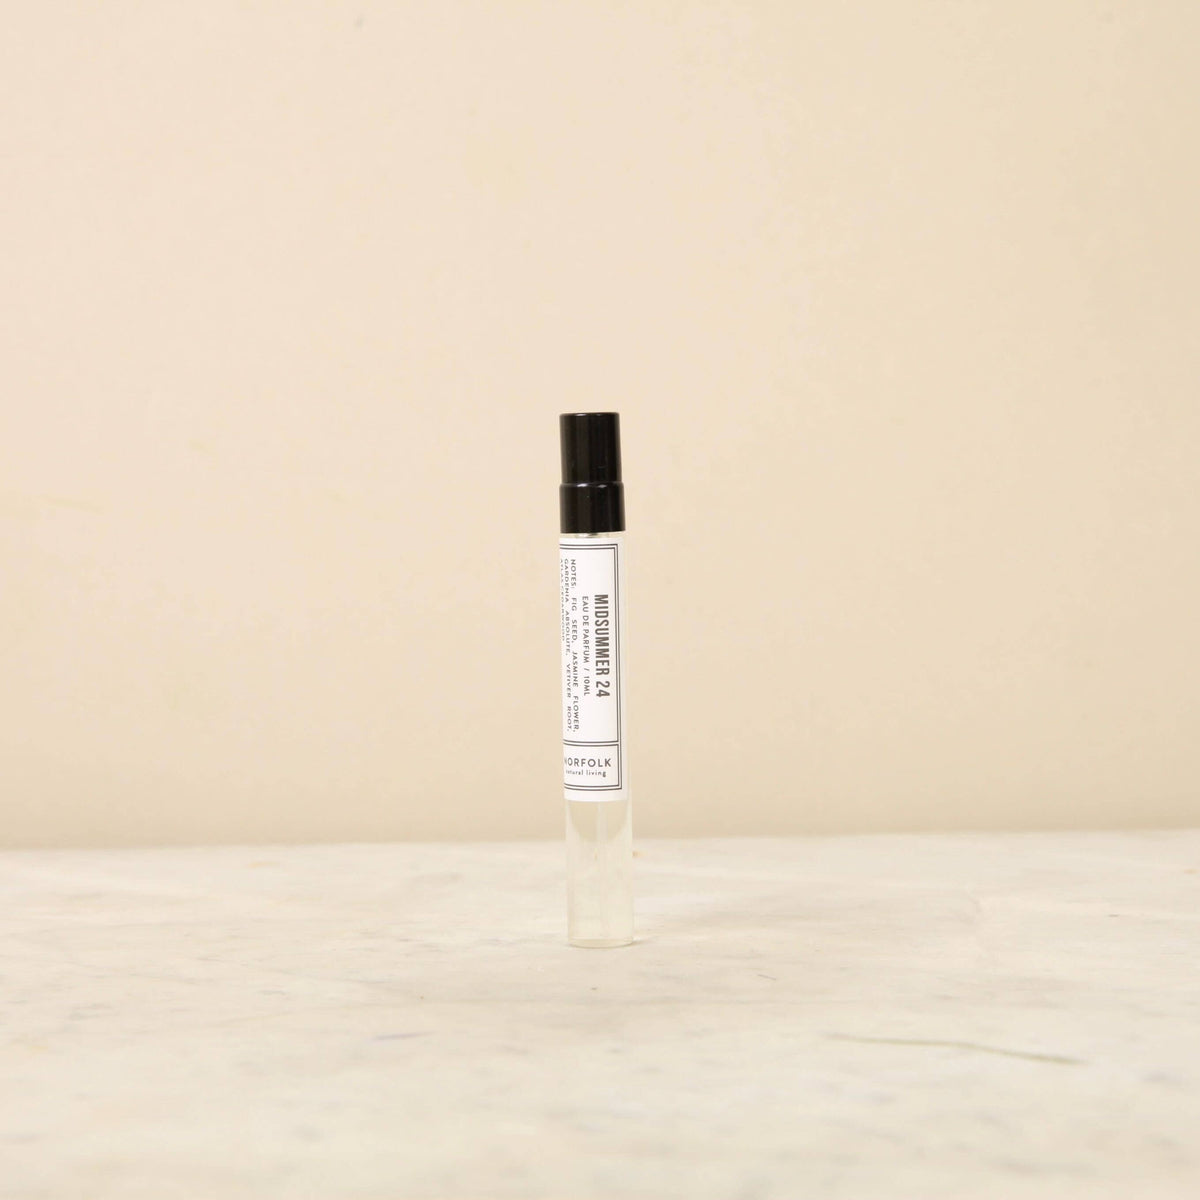 Norfolk Natural Living Parfum - MidSummer 24 10ml